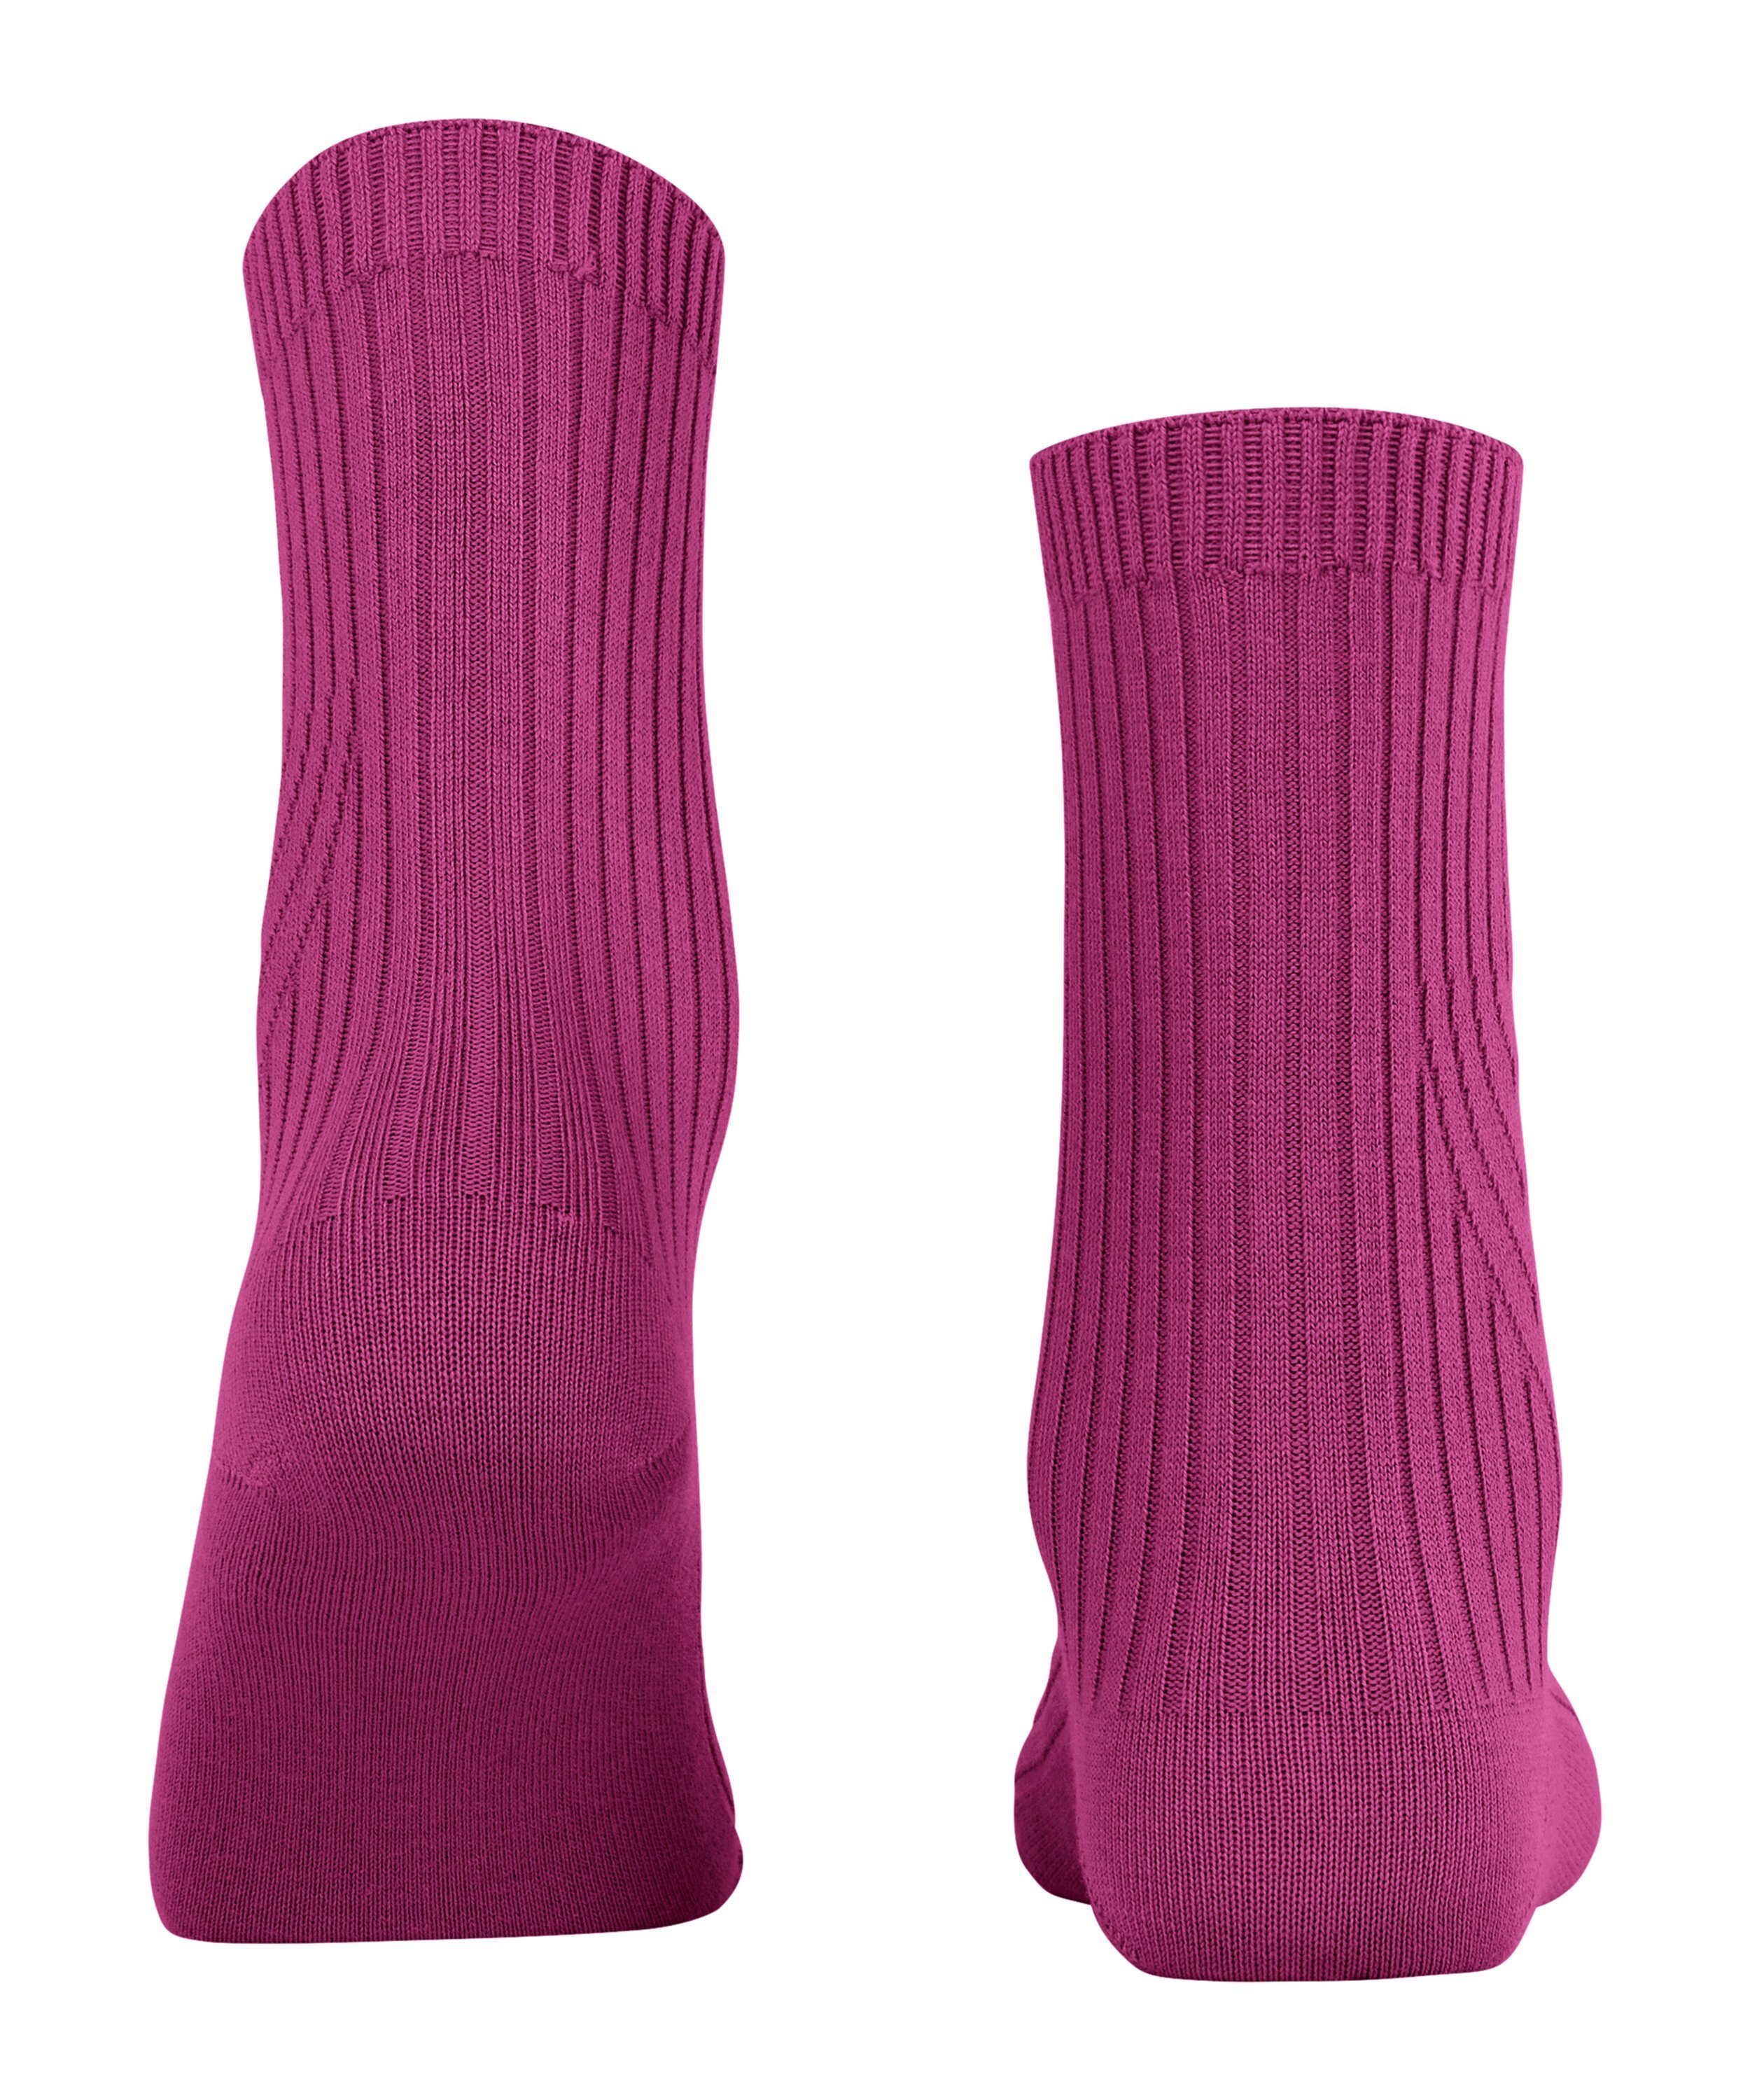 Knit FALKE Socken (8409) (1-Paar) pink orchid Cross